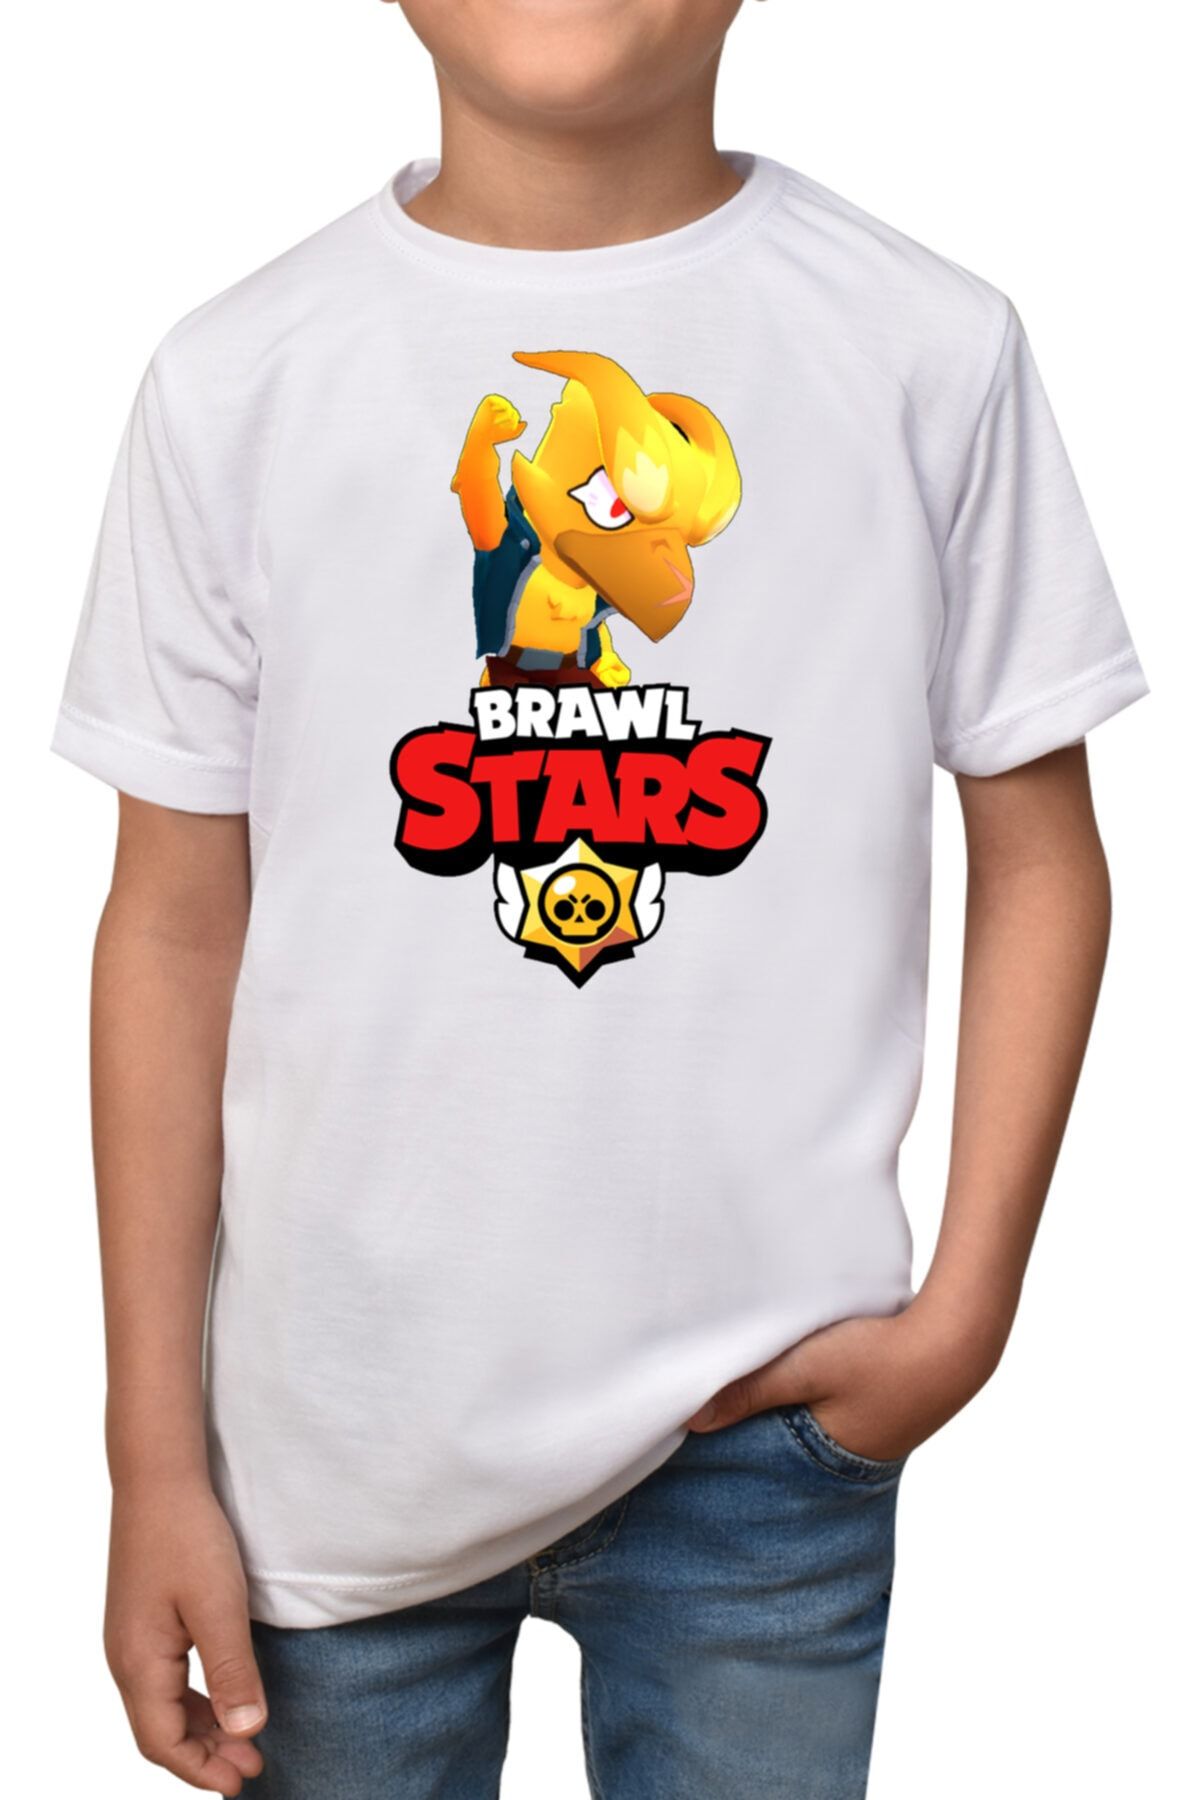 Camiseta Brawl Stars Crow para niño. Magicpersonajes,com